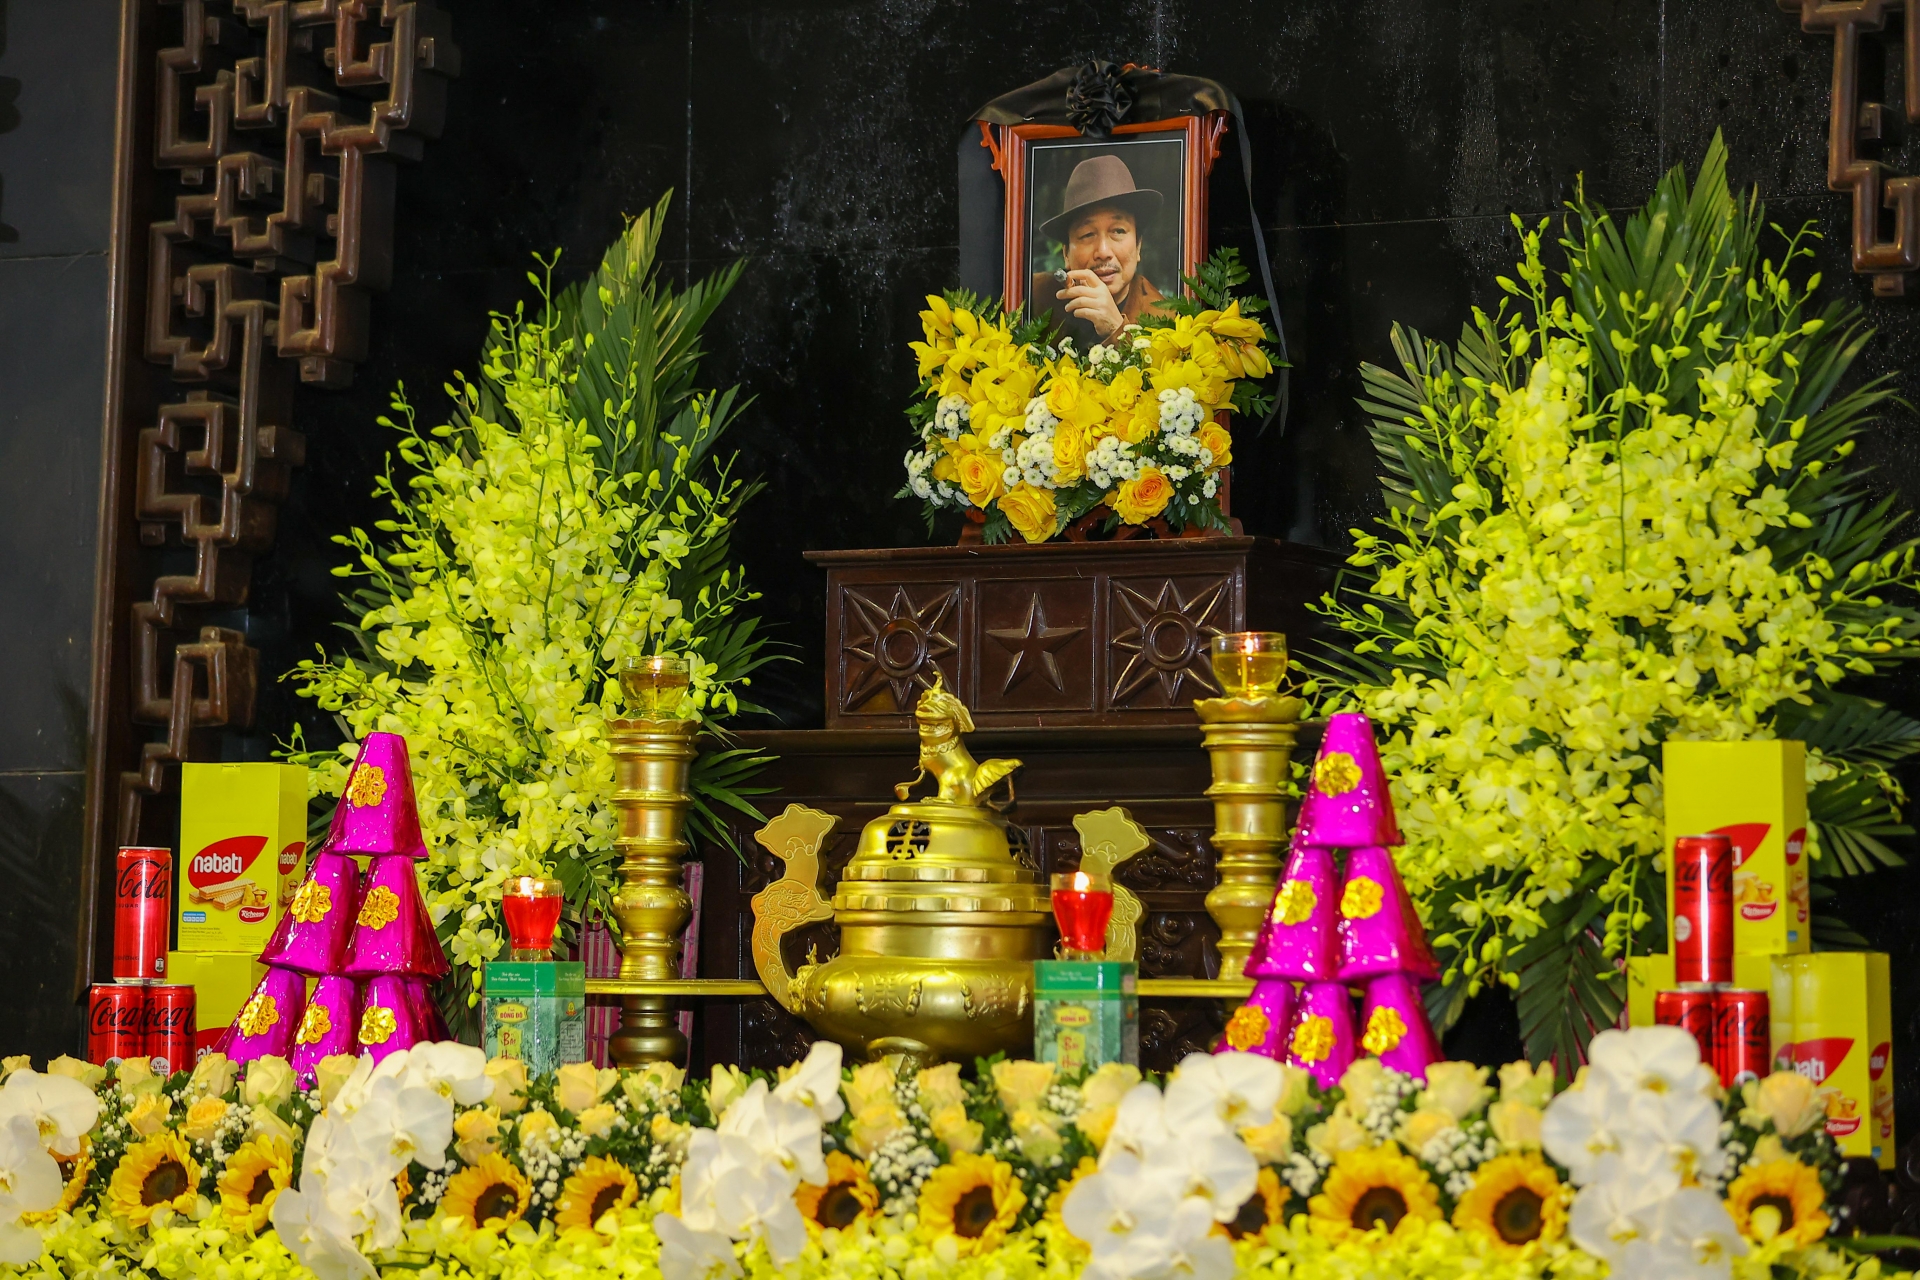 Tang lễ của nhạc sĩ Phú Quang đã được diễn ra vào sáng ngày 13/12